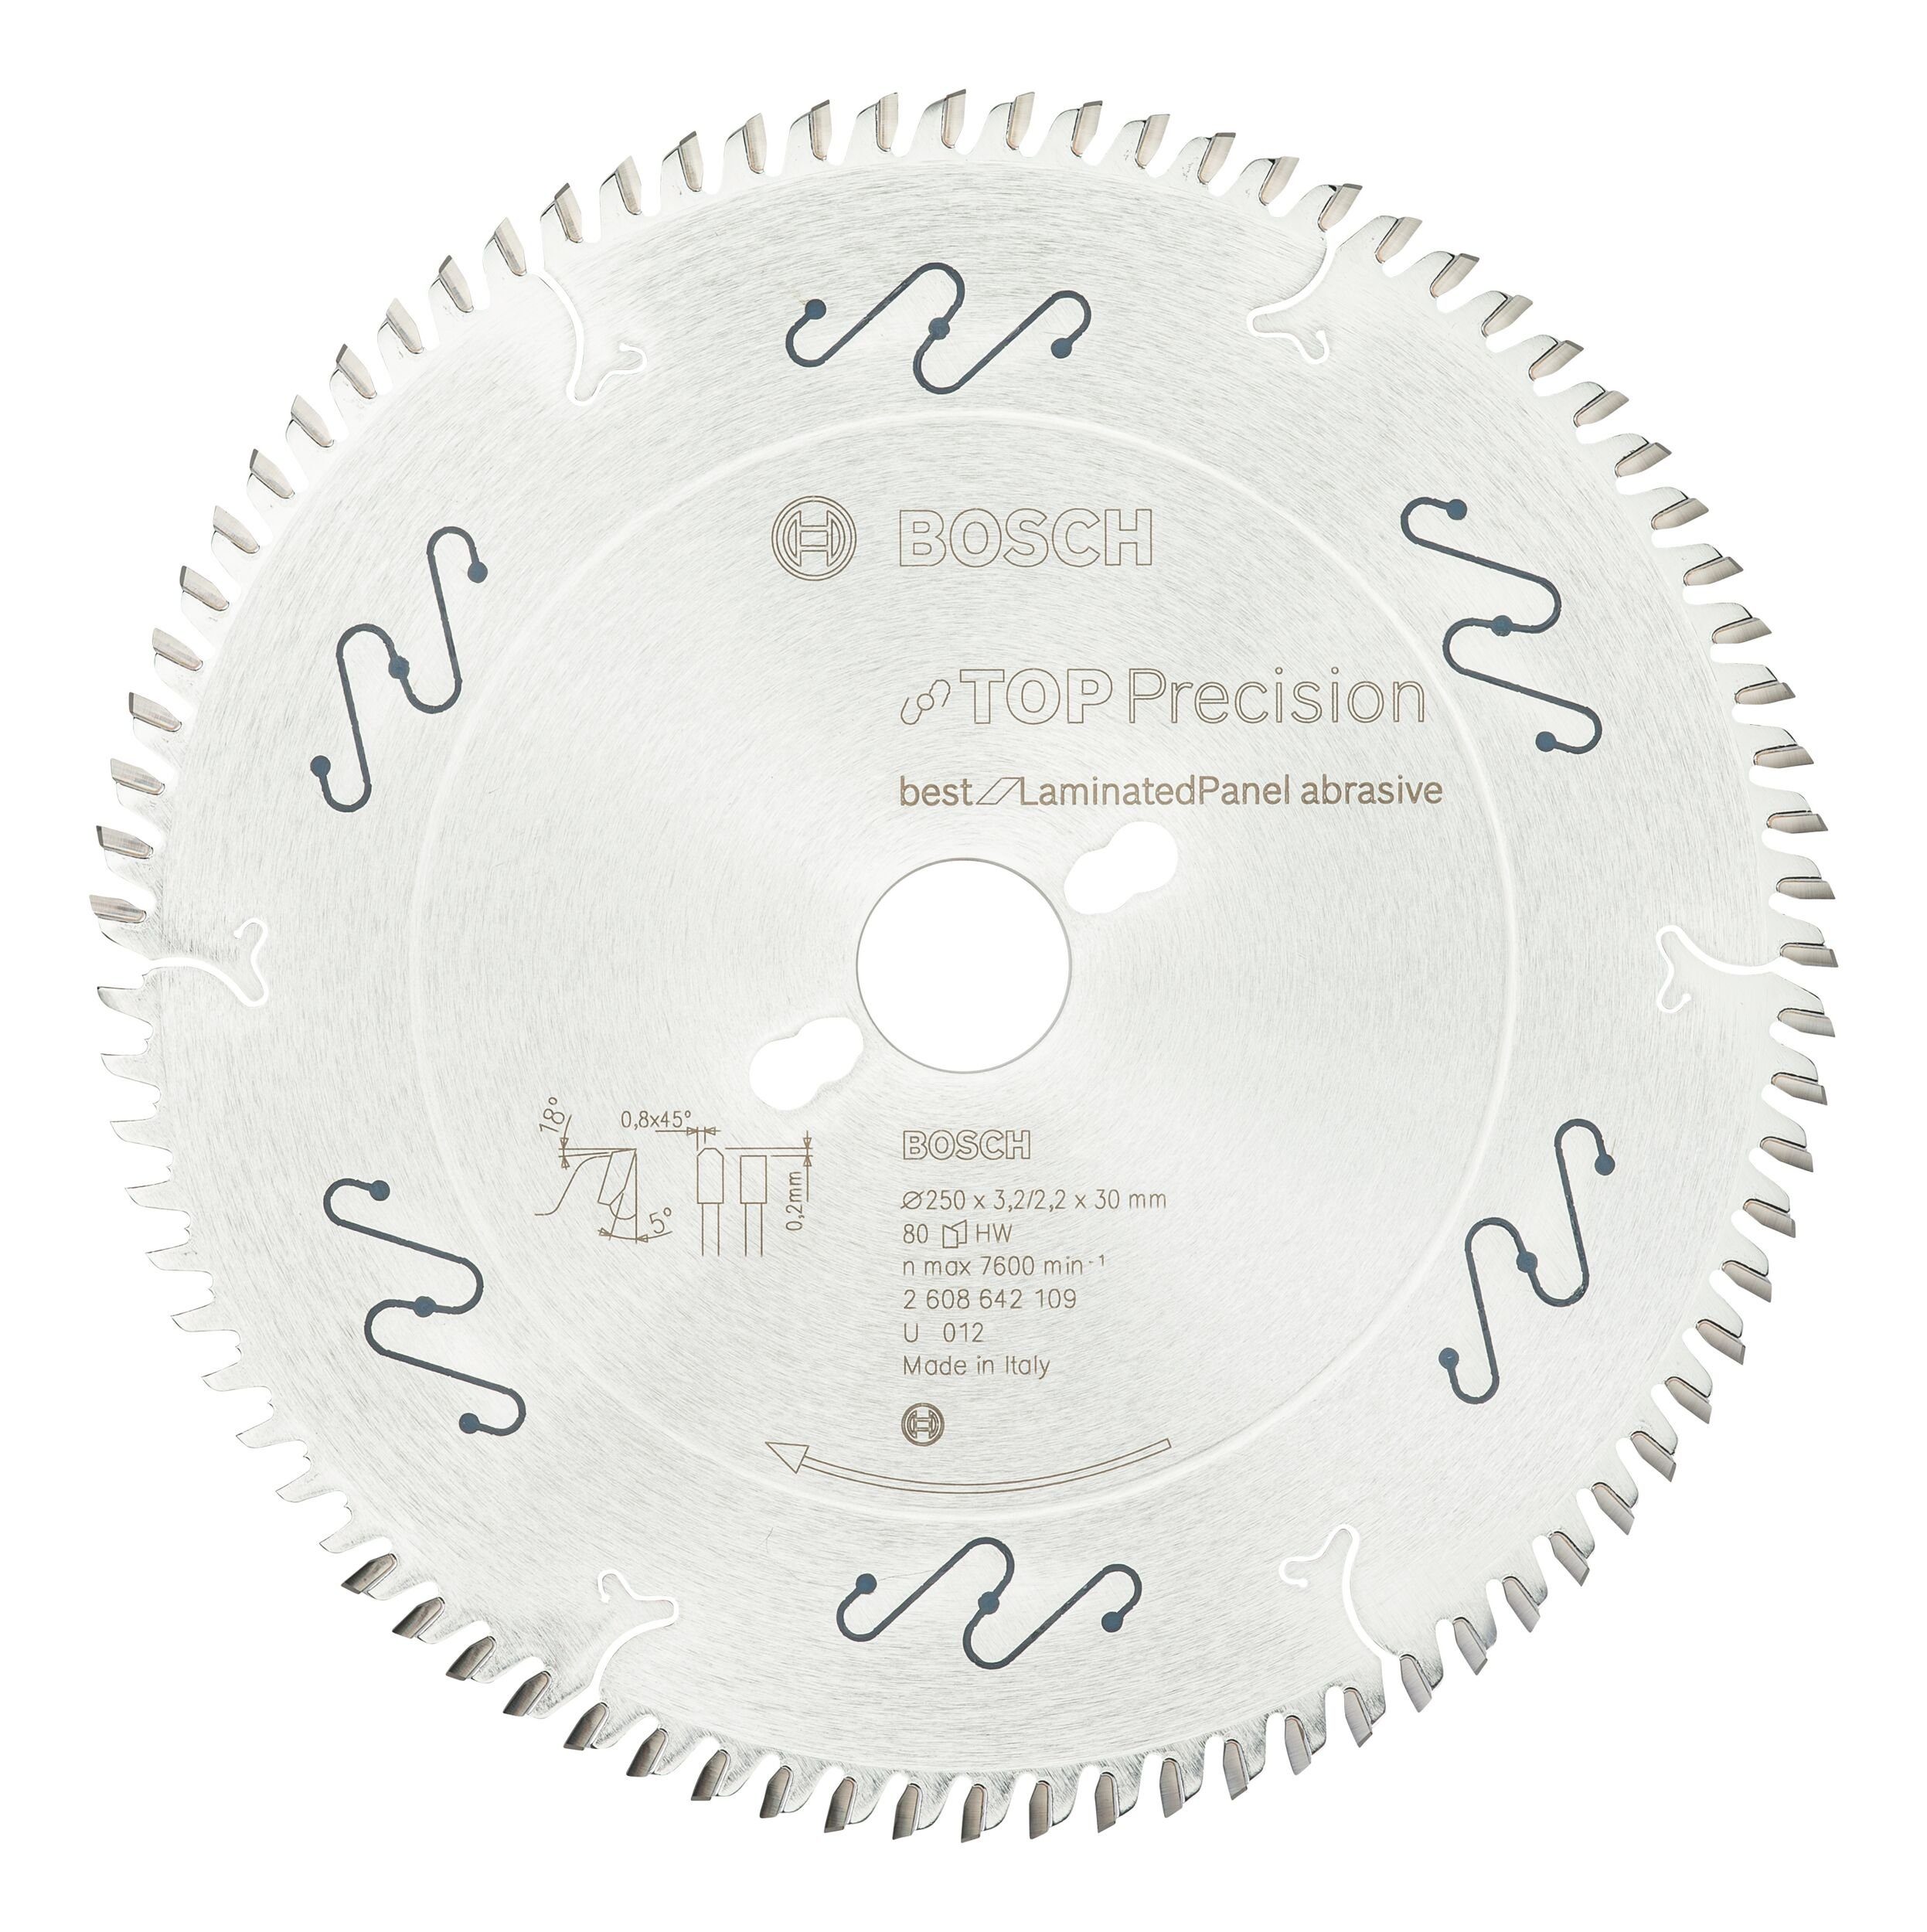 BOSCH Kreissägeblatt, Top Precision Best for Laminated Panel Abrasive 80Z - 250 x 30 x 3 | Kreissägeblätter